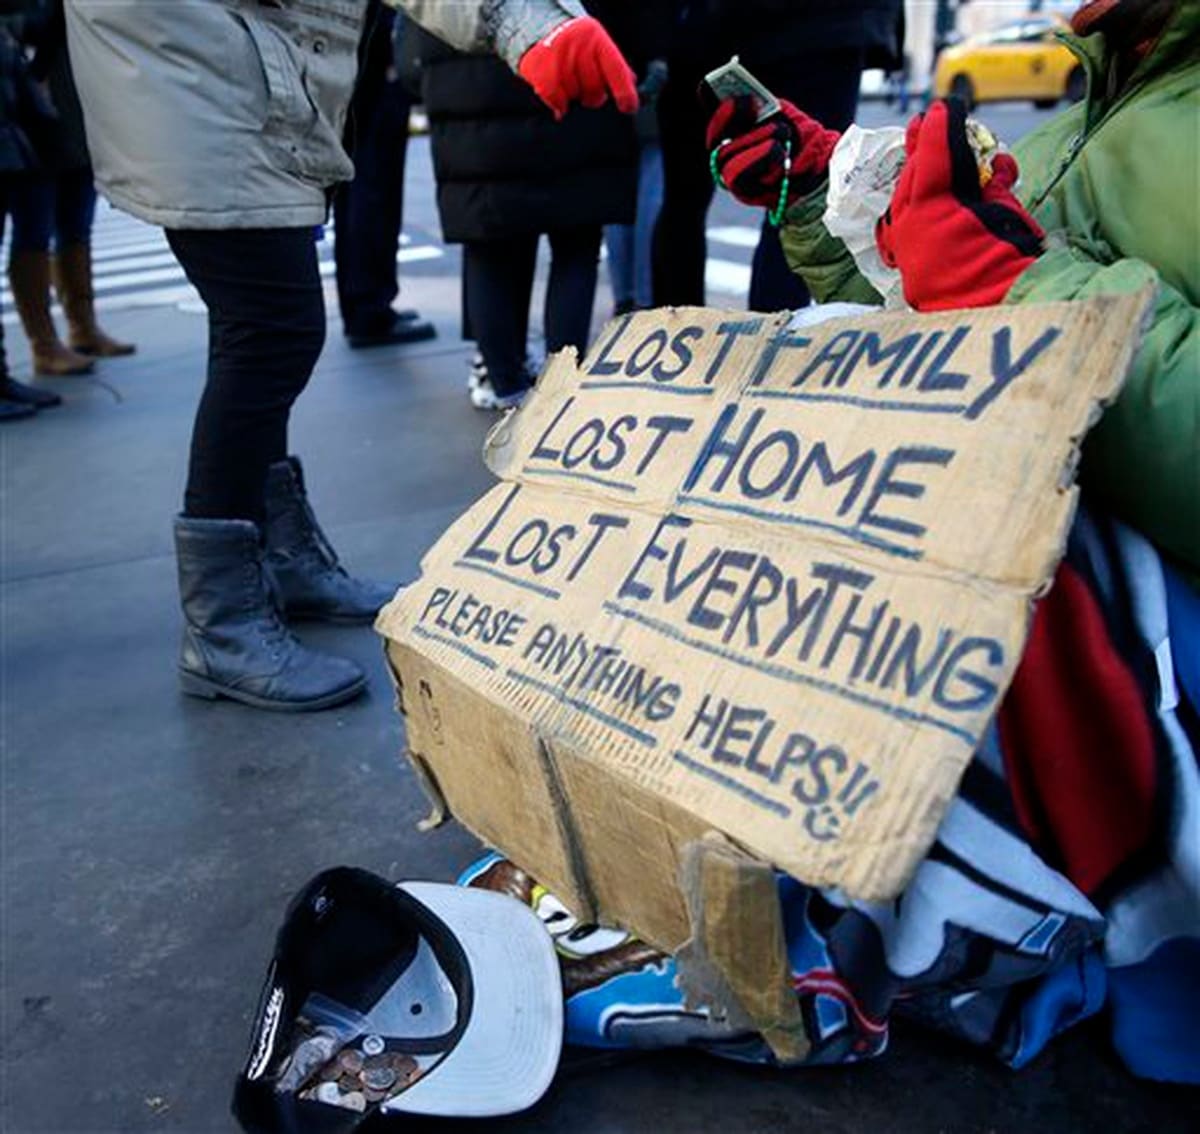 VA drops goal of zero homeless veterans